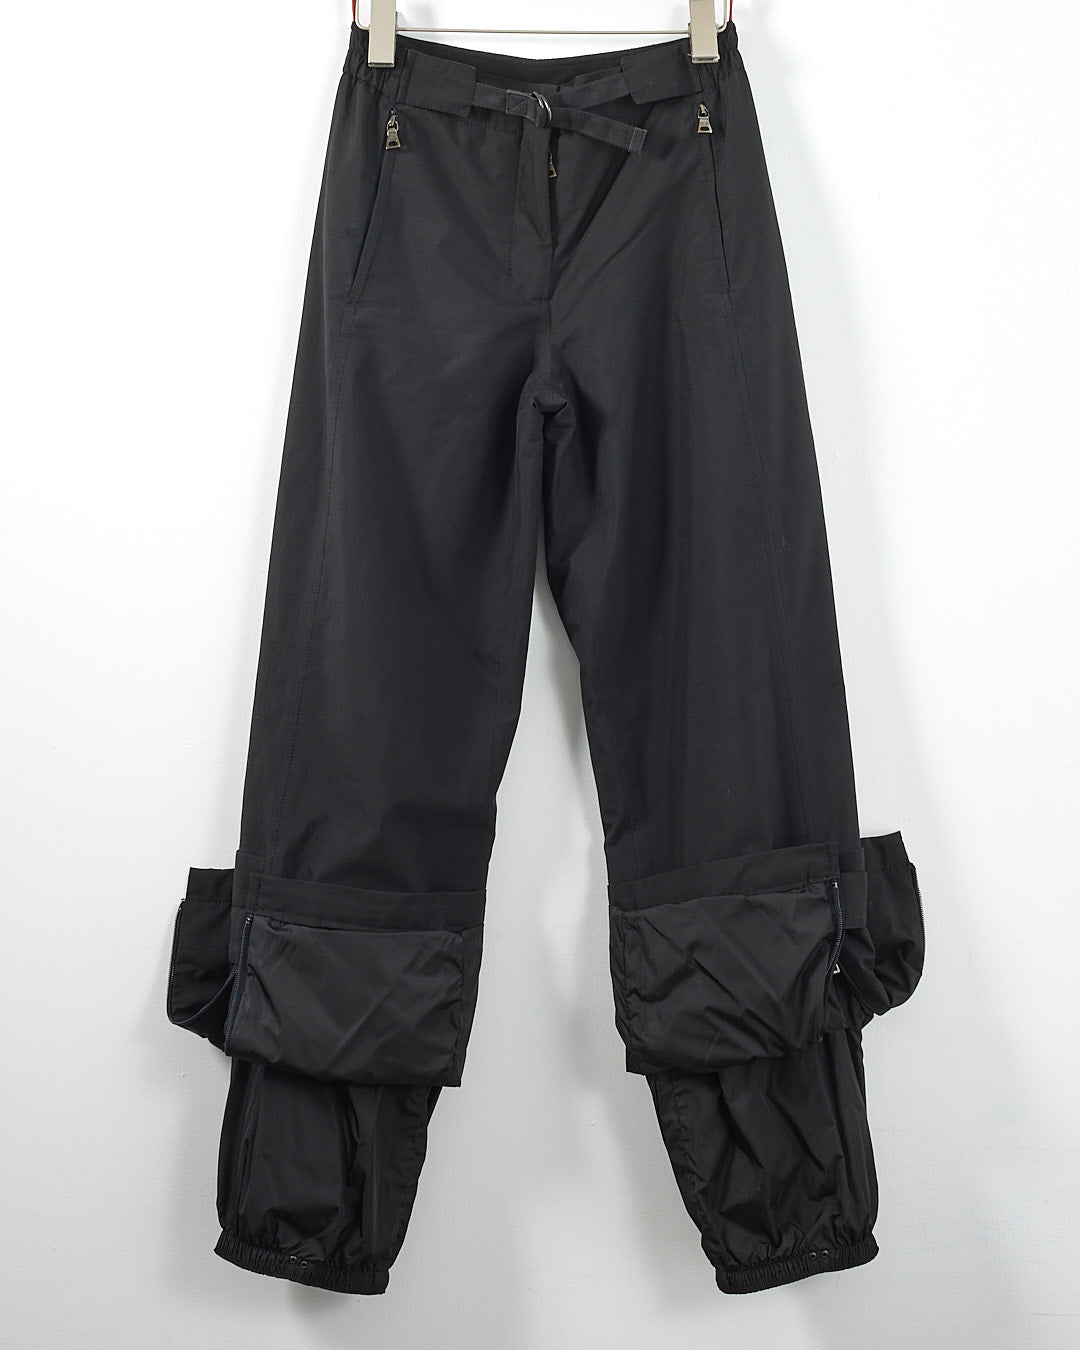 Prada Extreme-Tex Stretch Gortex Belted Ski Jacket with Fur Trim and Ski Pants - 42